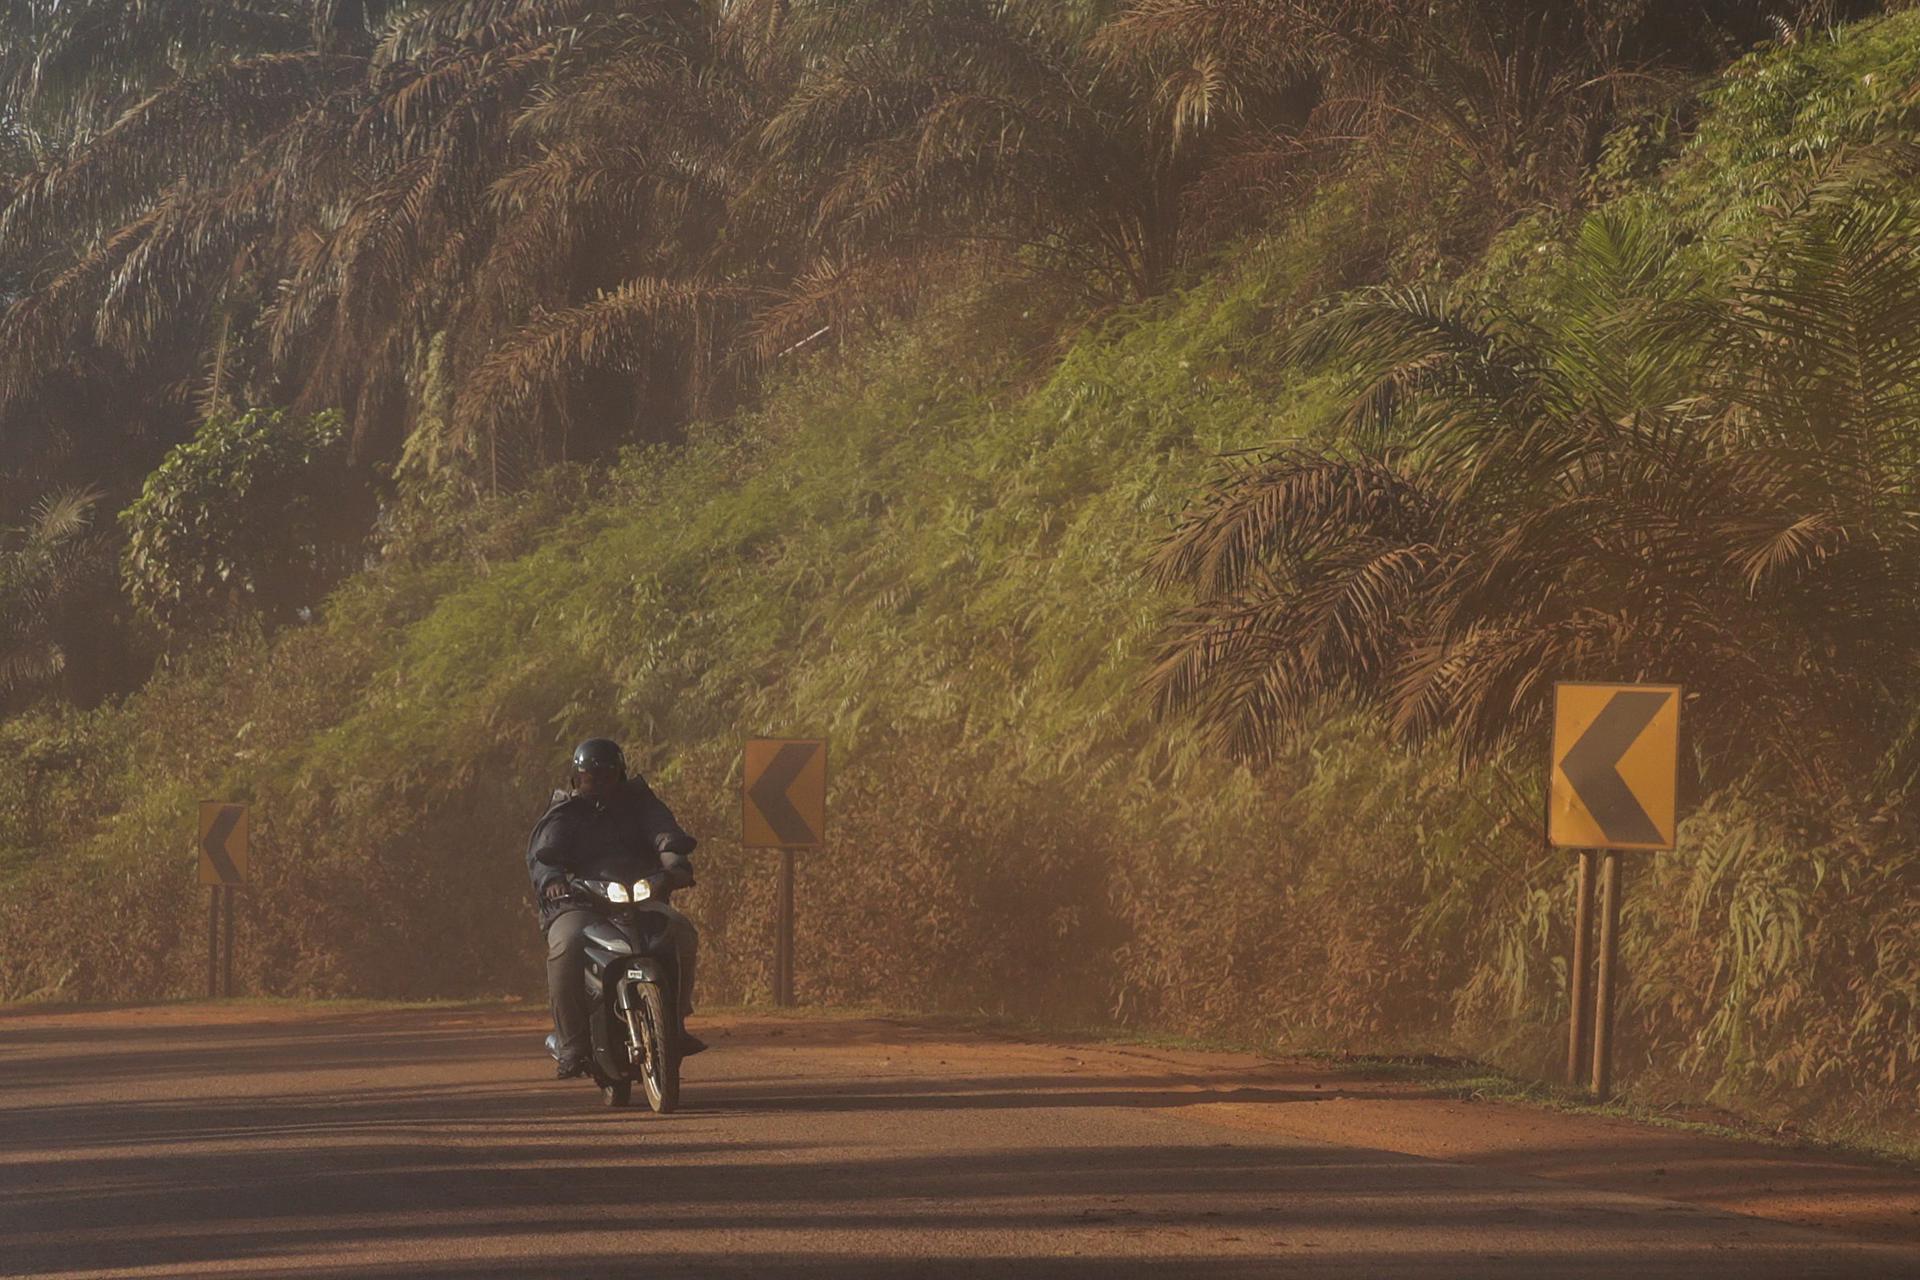 Un motociclista circula por una carretera cubierta de polvo debido a la contaminación en Kuantan (Malasia), en una imagen de archivo. EFE/Fazry Ismail